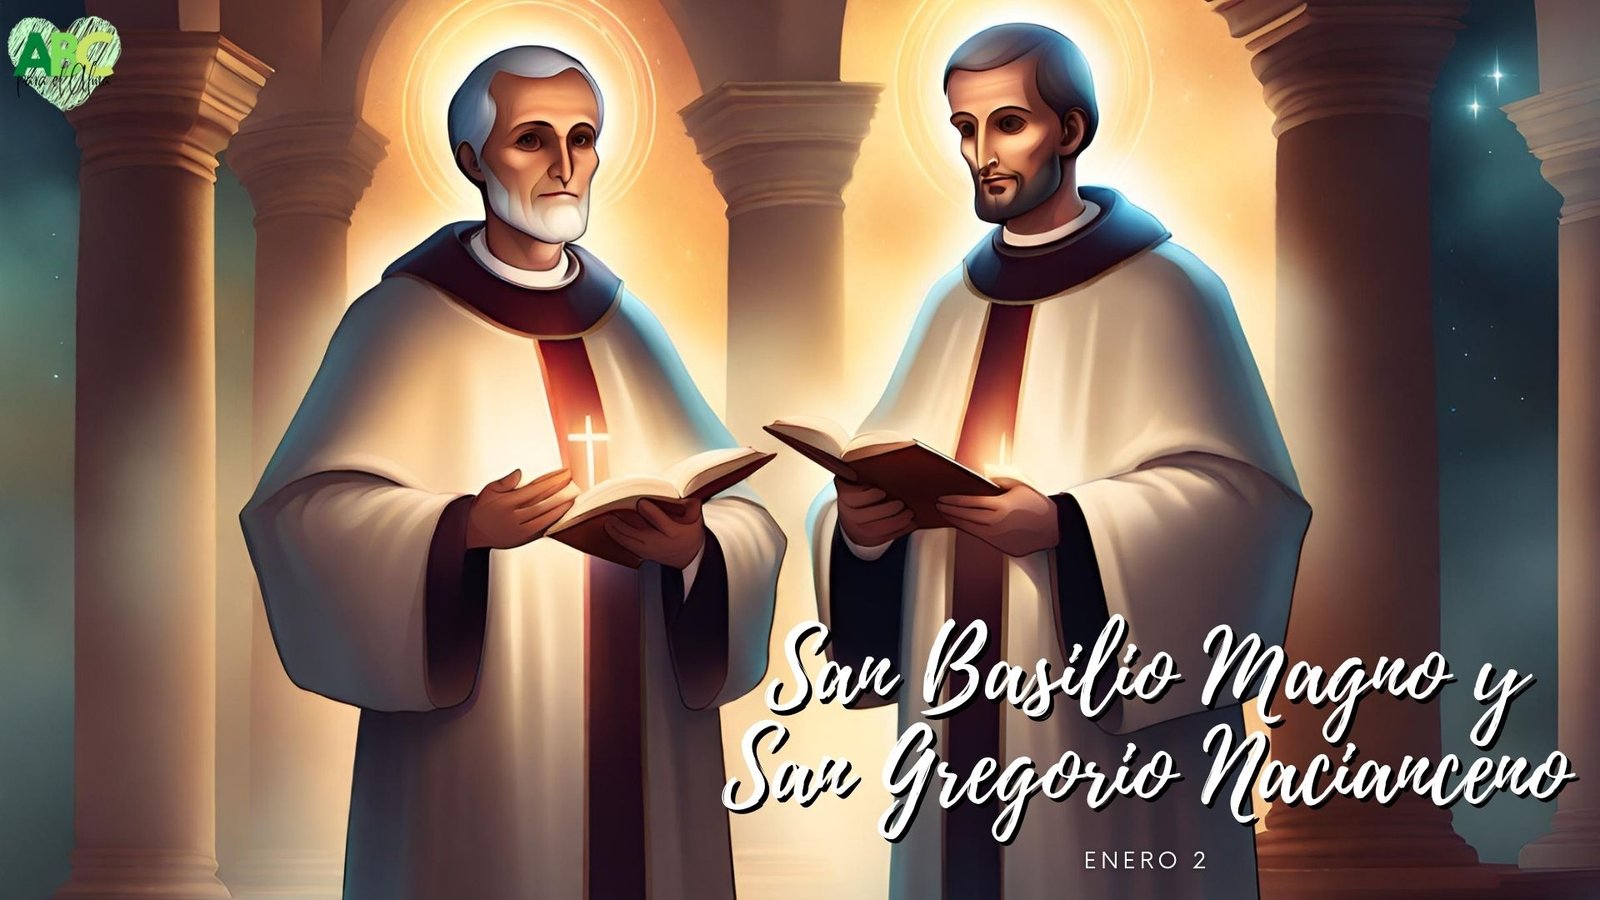 San Basilio y San Gregorio, ABC para el alma